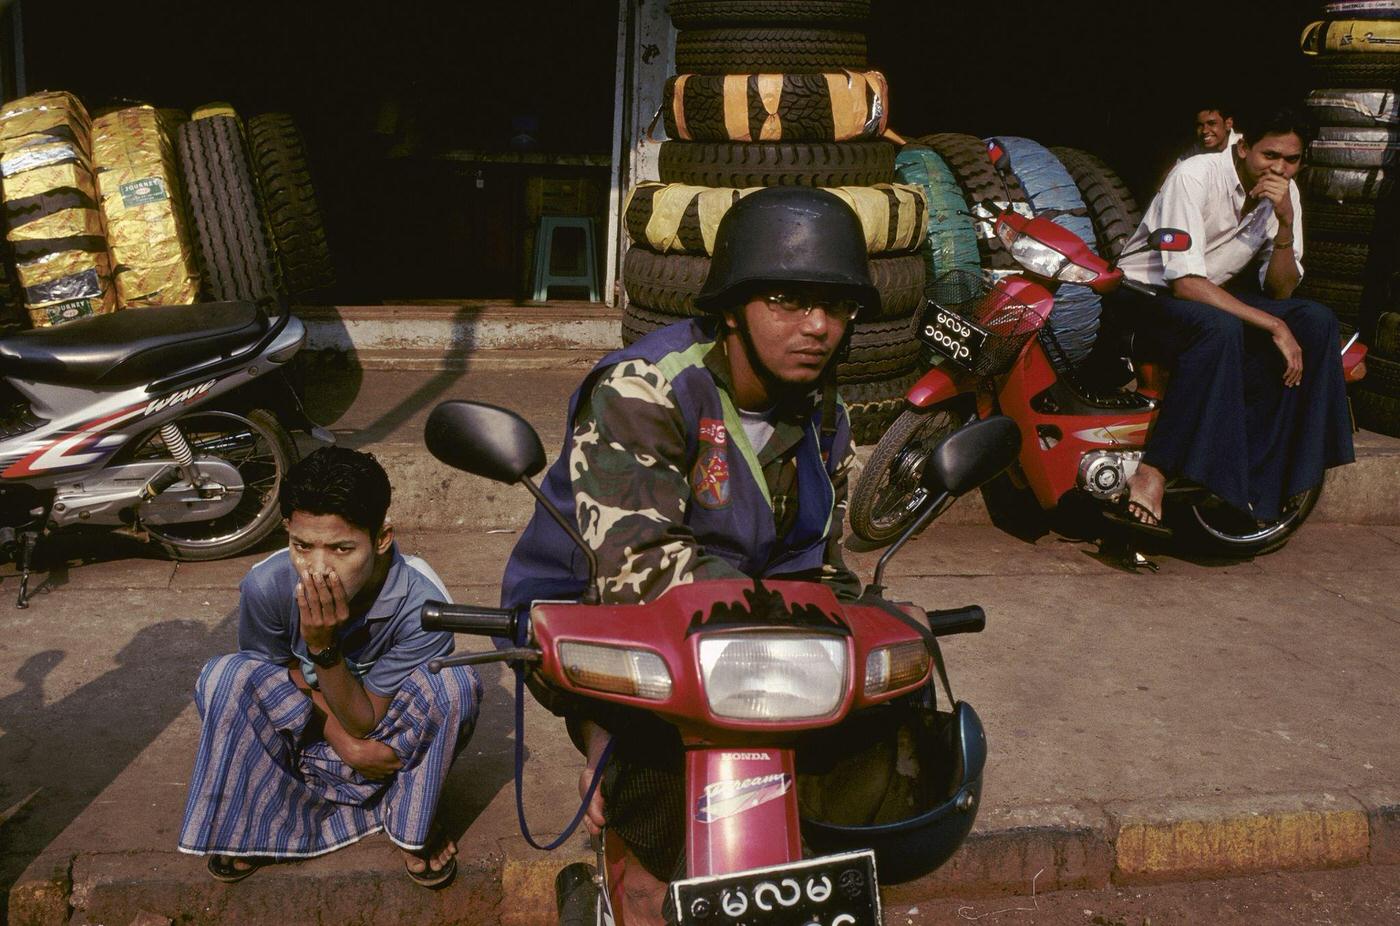 Myanmar - Man on a Motorcycle Wearing Copy of SS German Helmet at Moulmein, 1980s